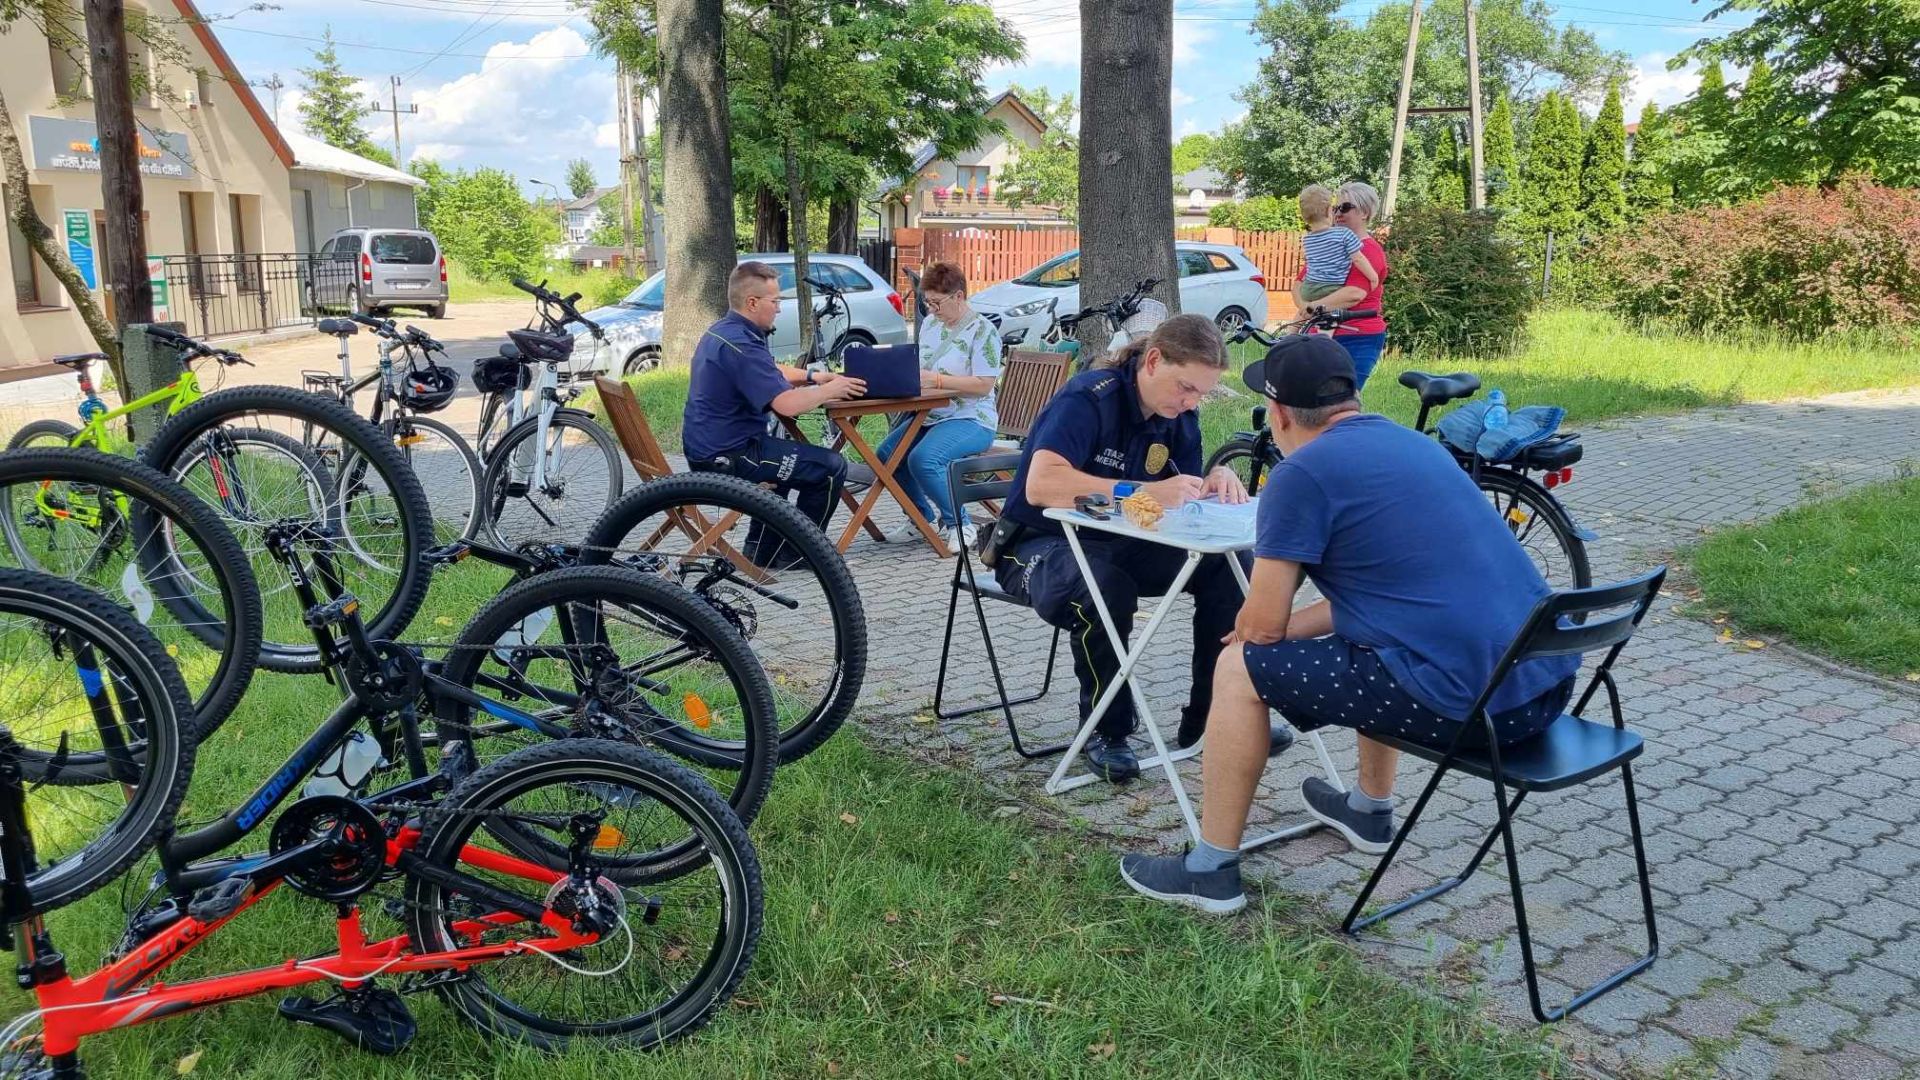 Strażnicy znakowali rowery na miejscu, w parku Św. Wawrzyńca.